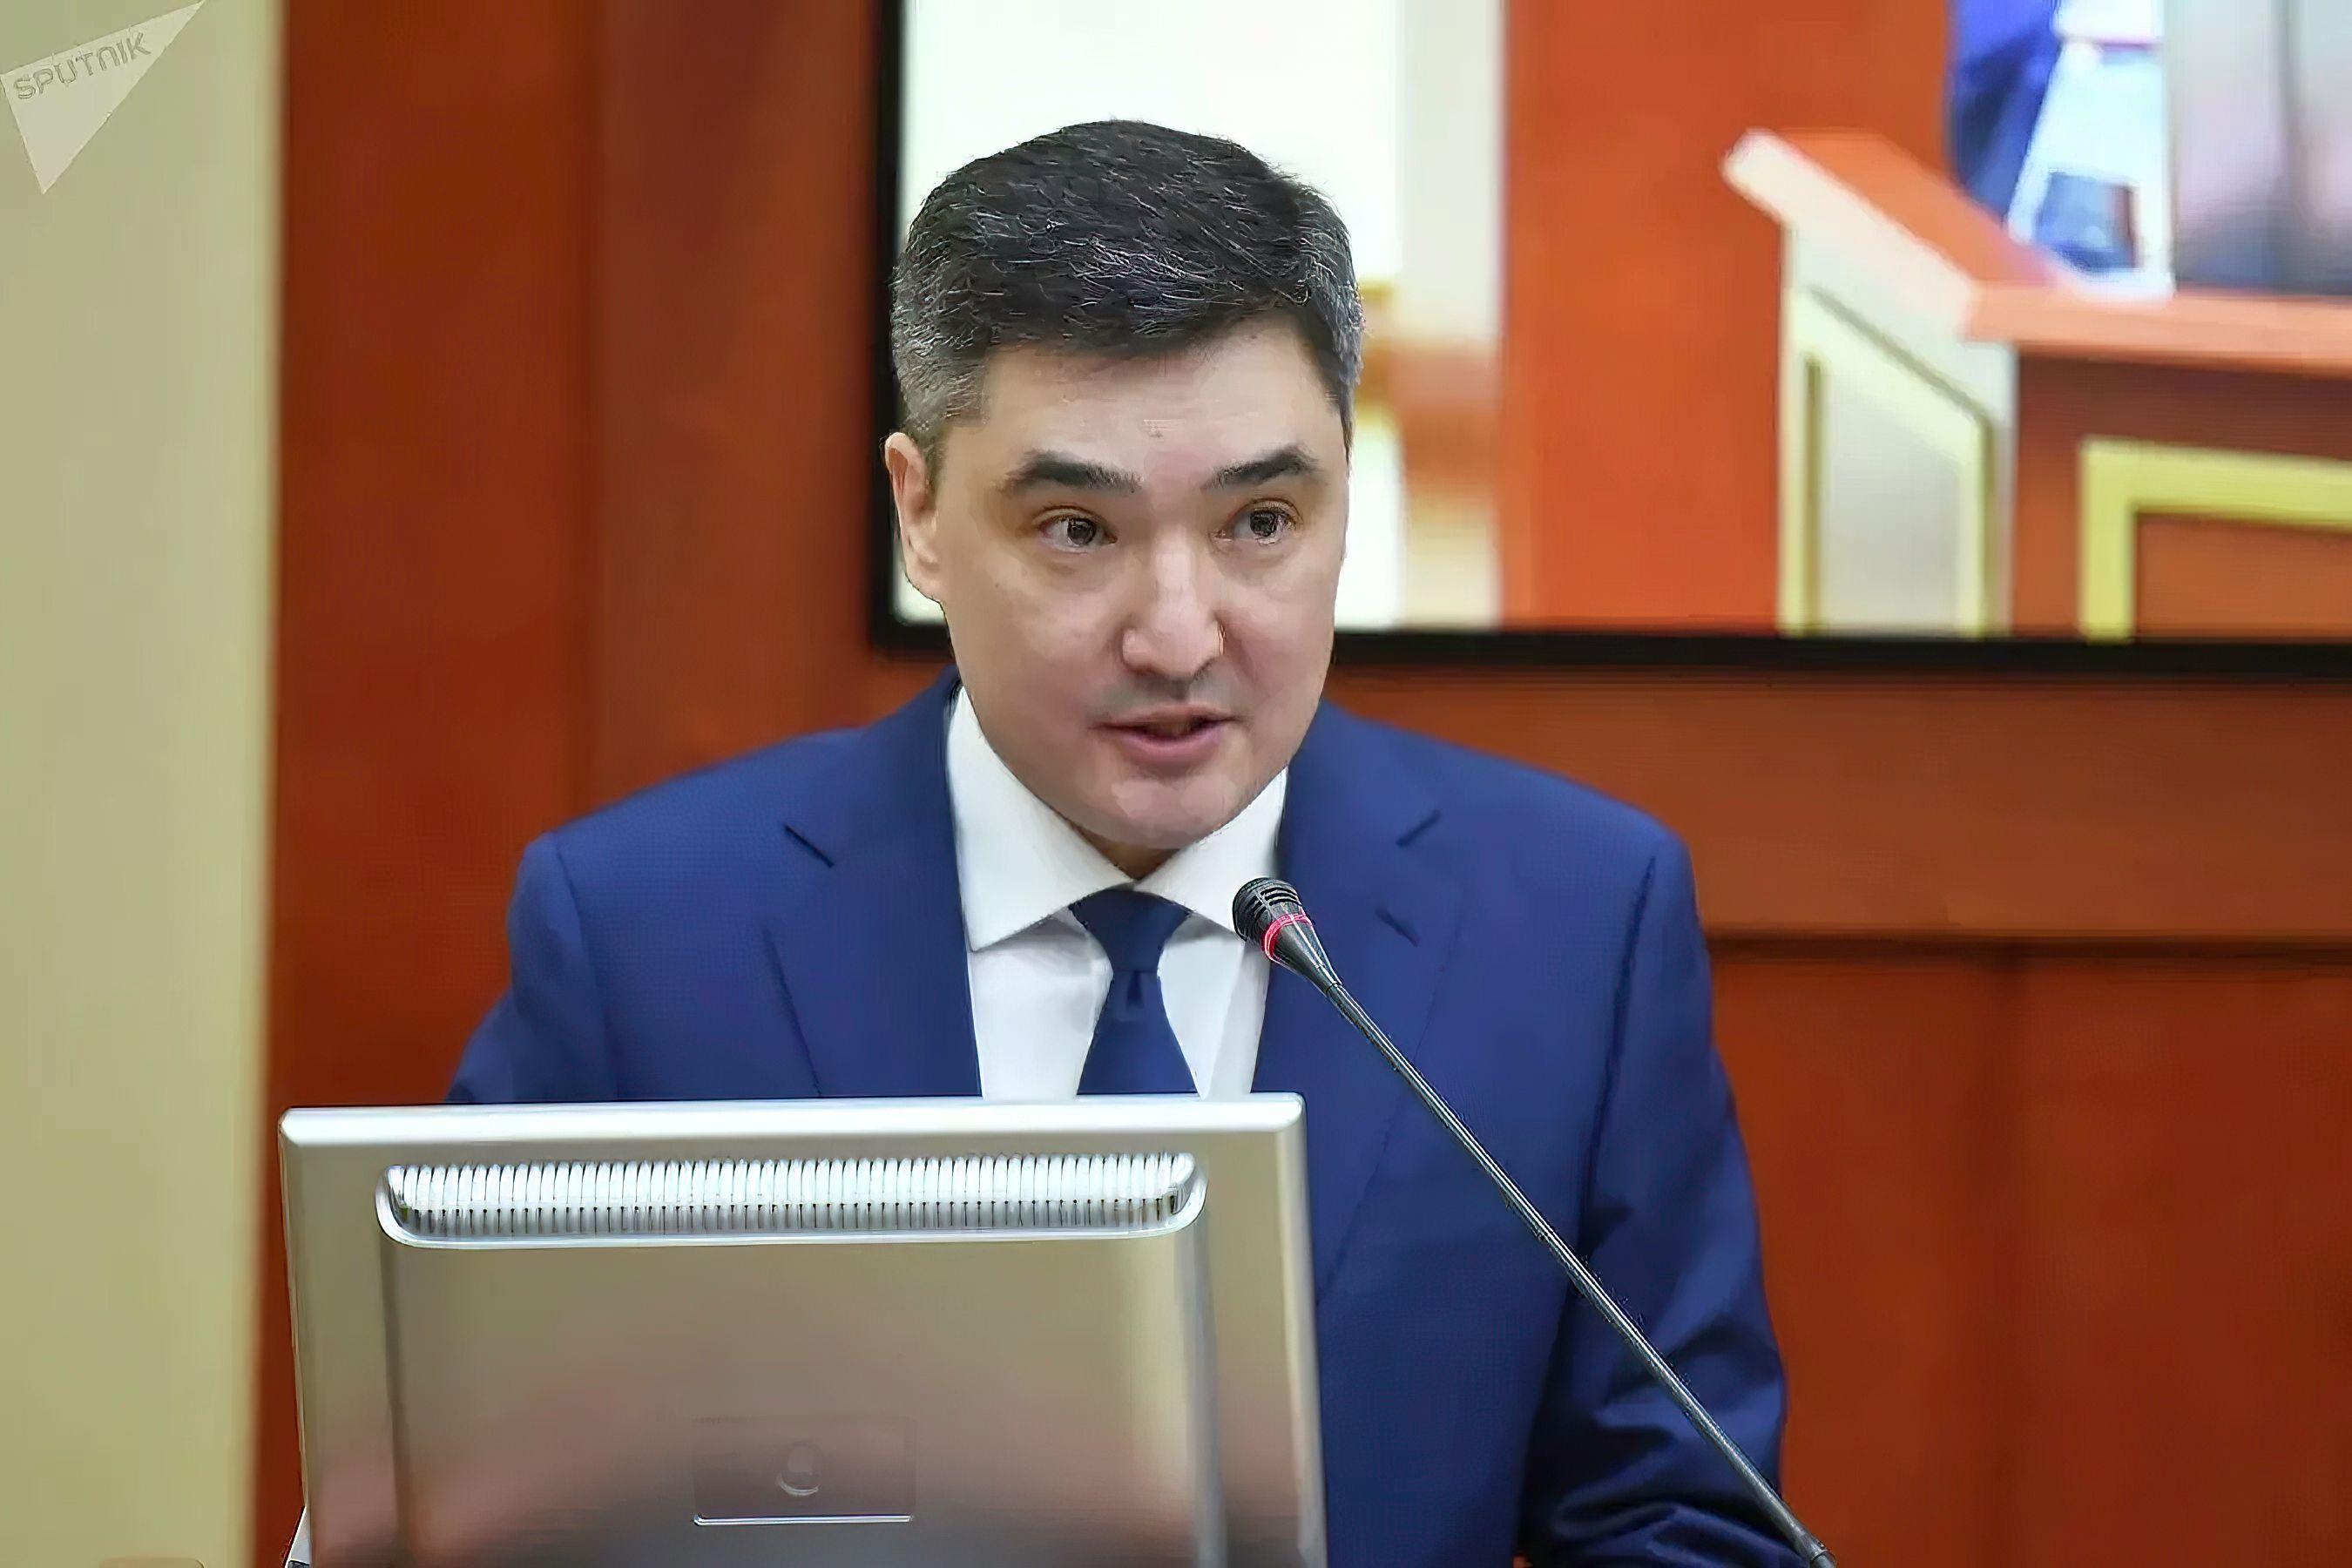 Olzhas Bektenov appointed Prime Minister of Kazakhstan